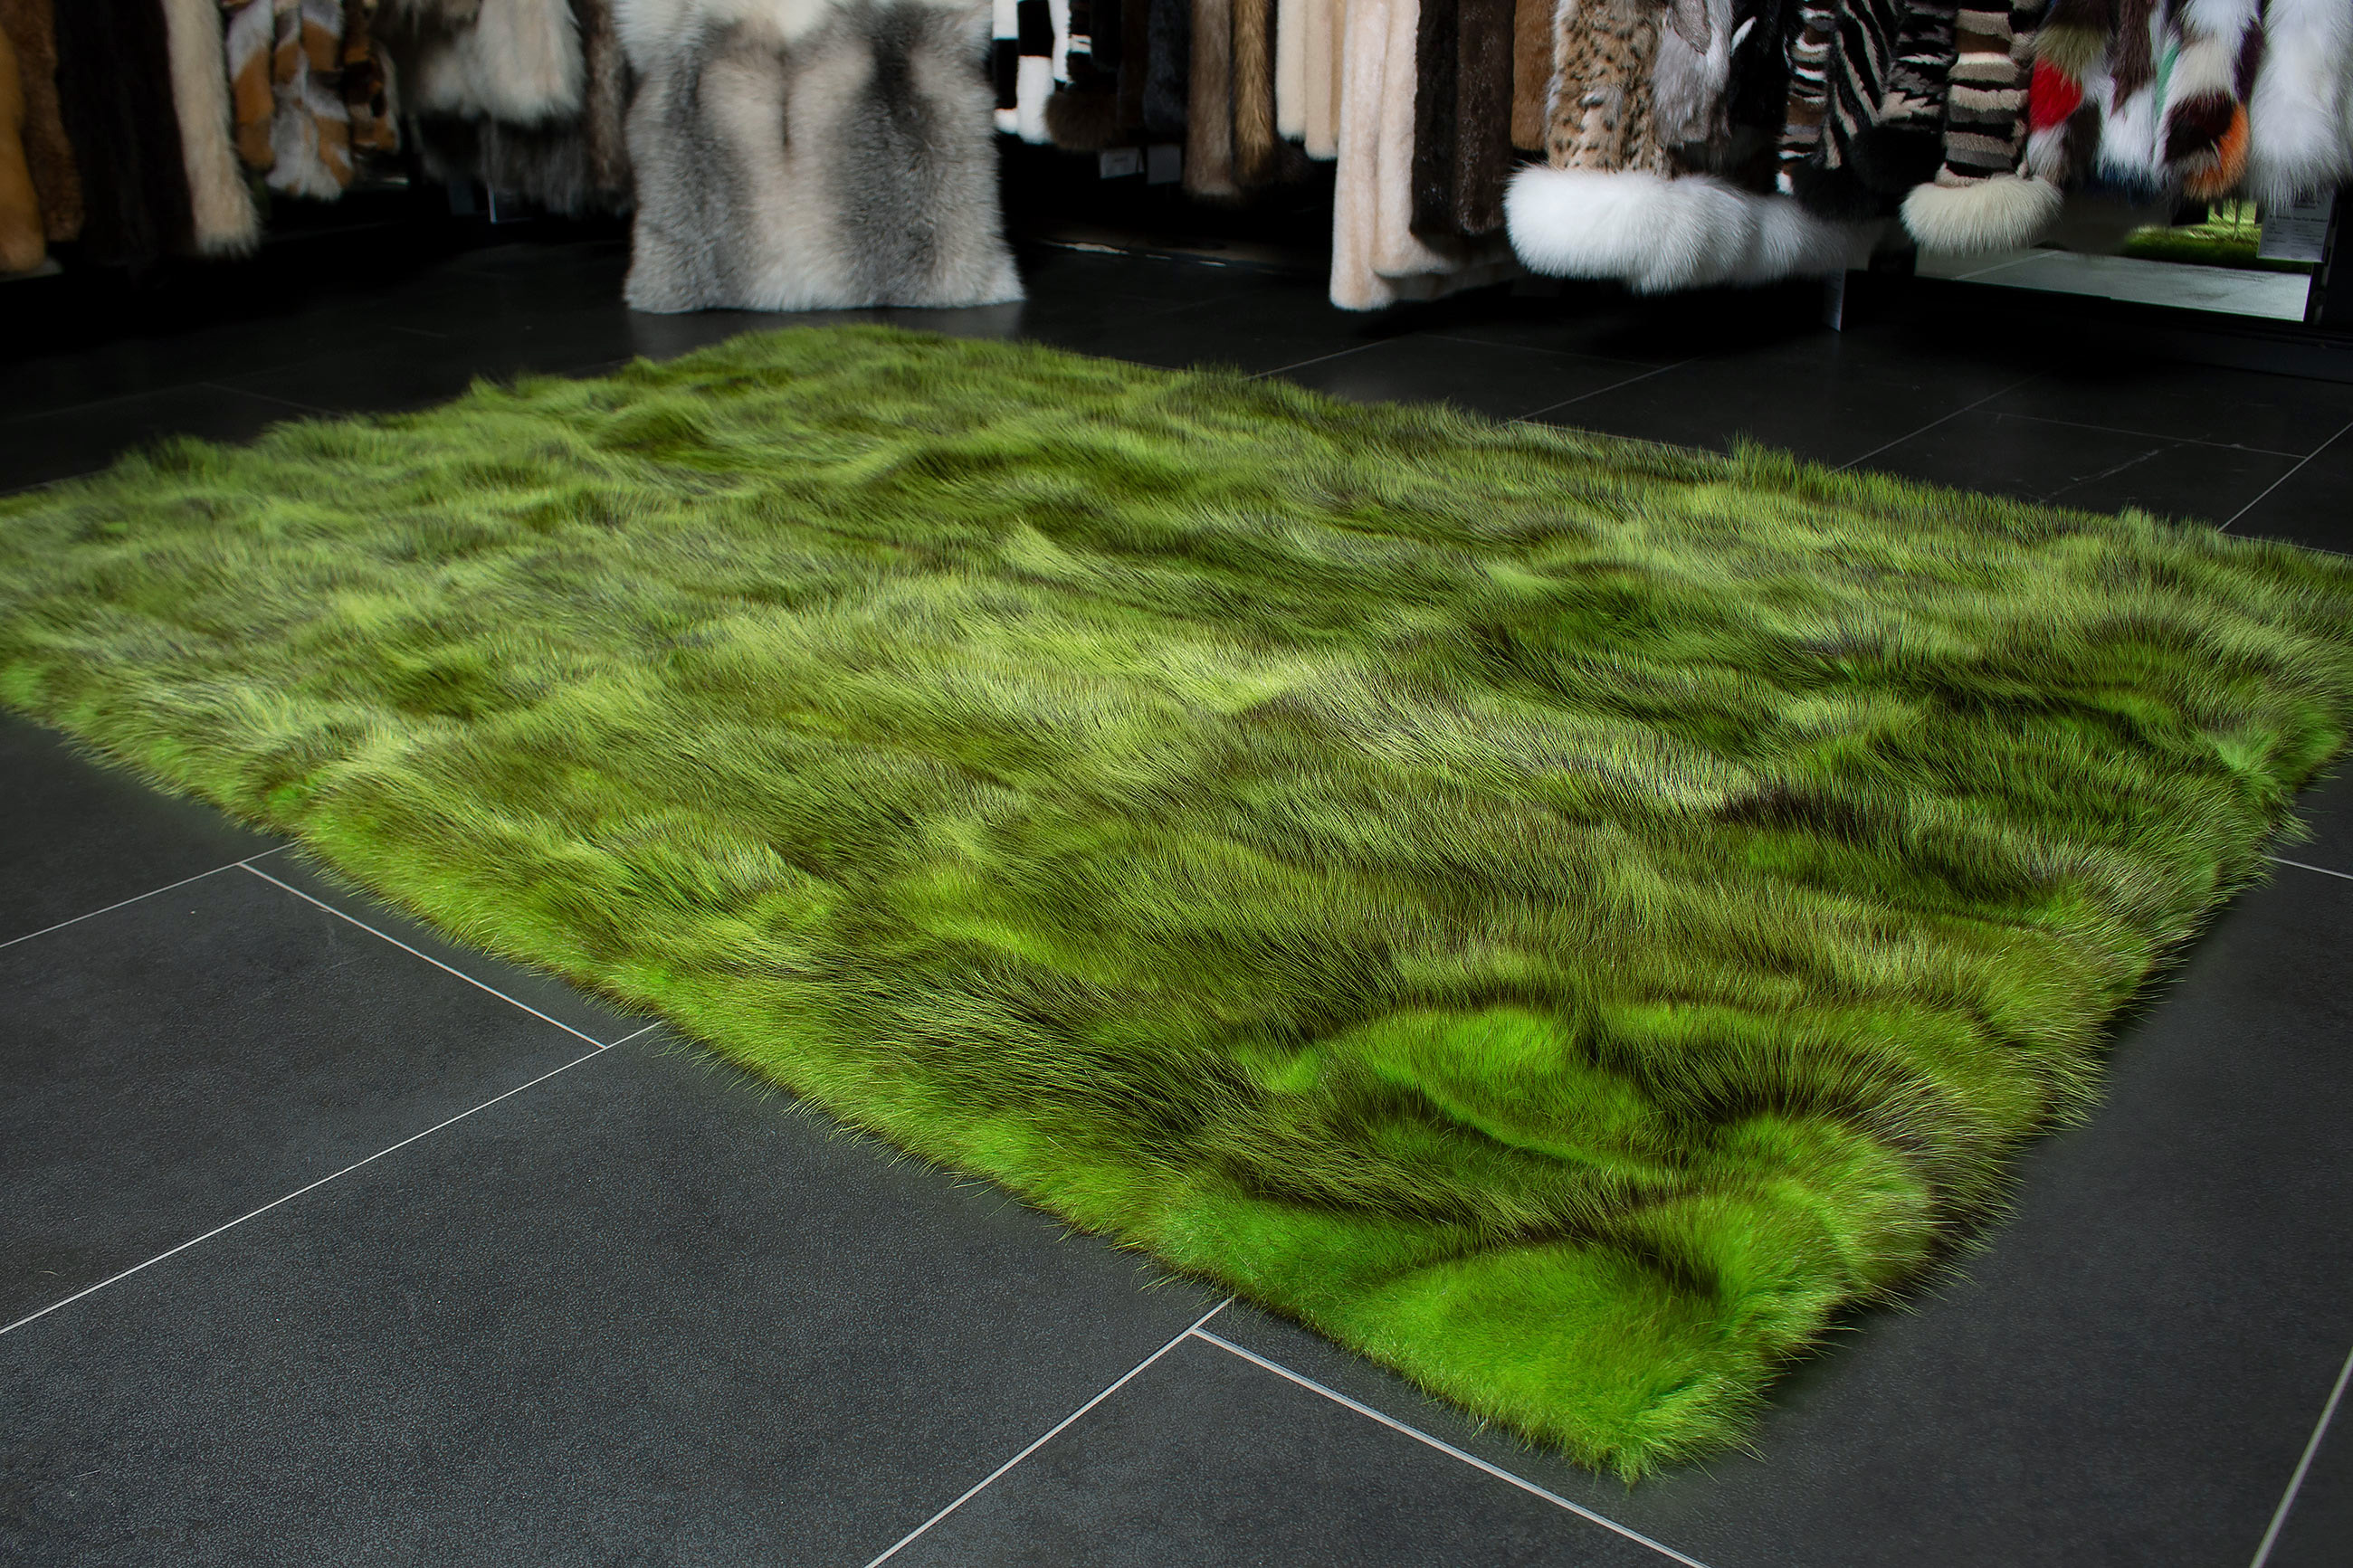 Possum Fur Carpet made with Genuine Wild Fur